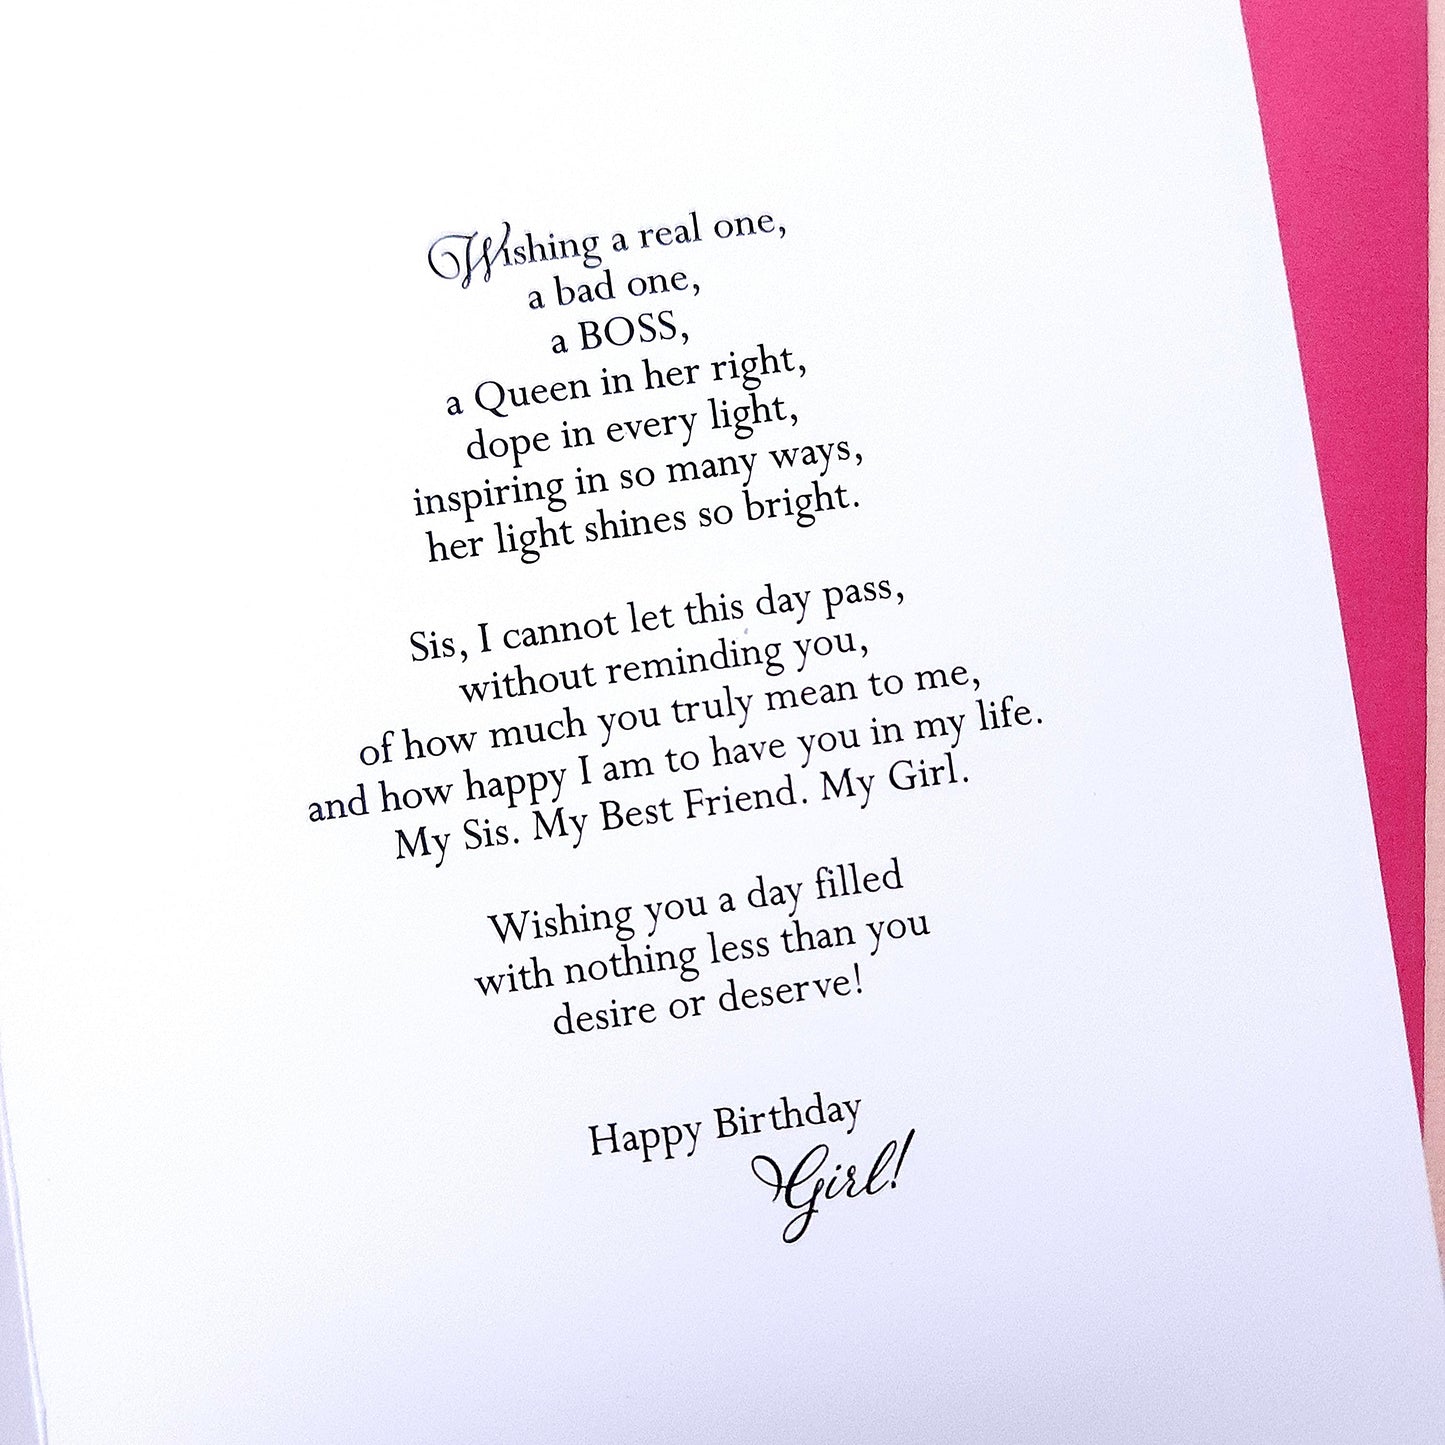 Happy Birthday - Woman Birthday Card